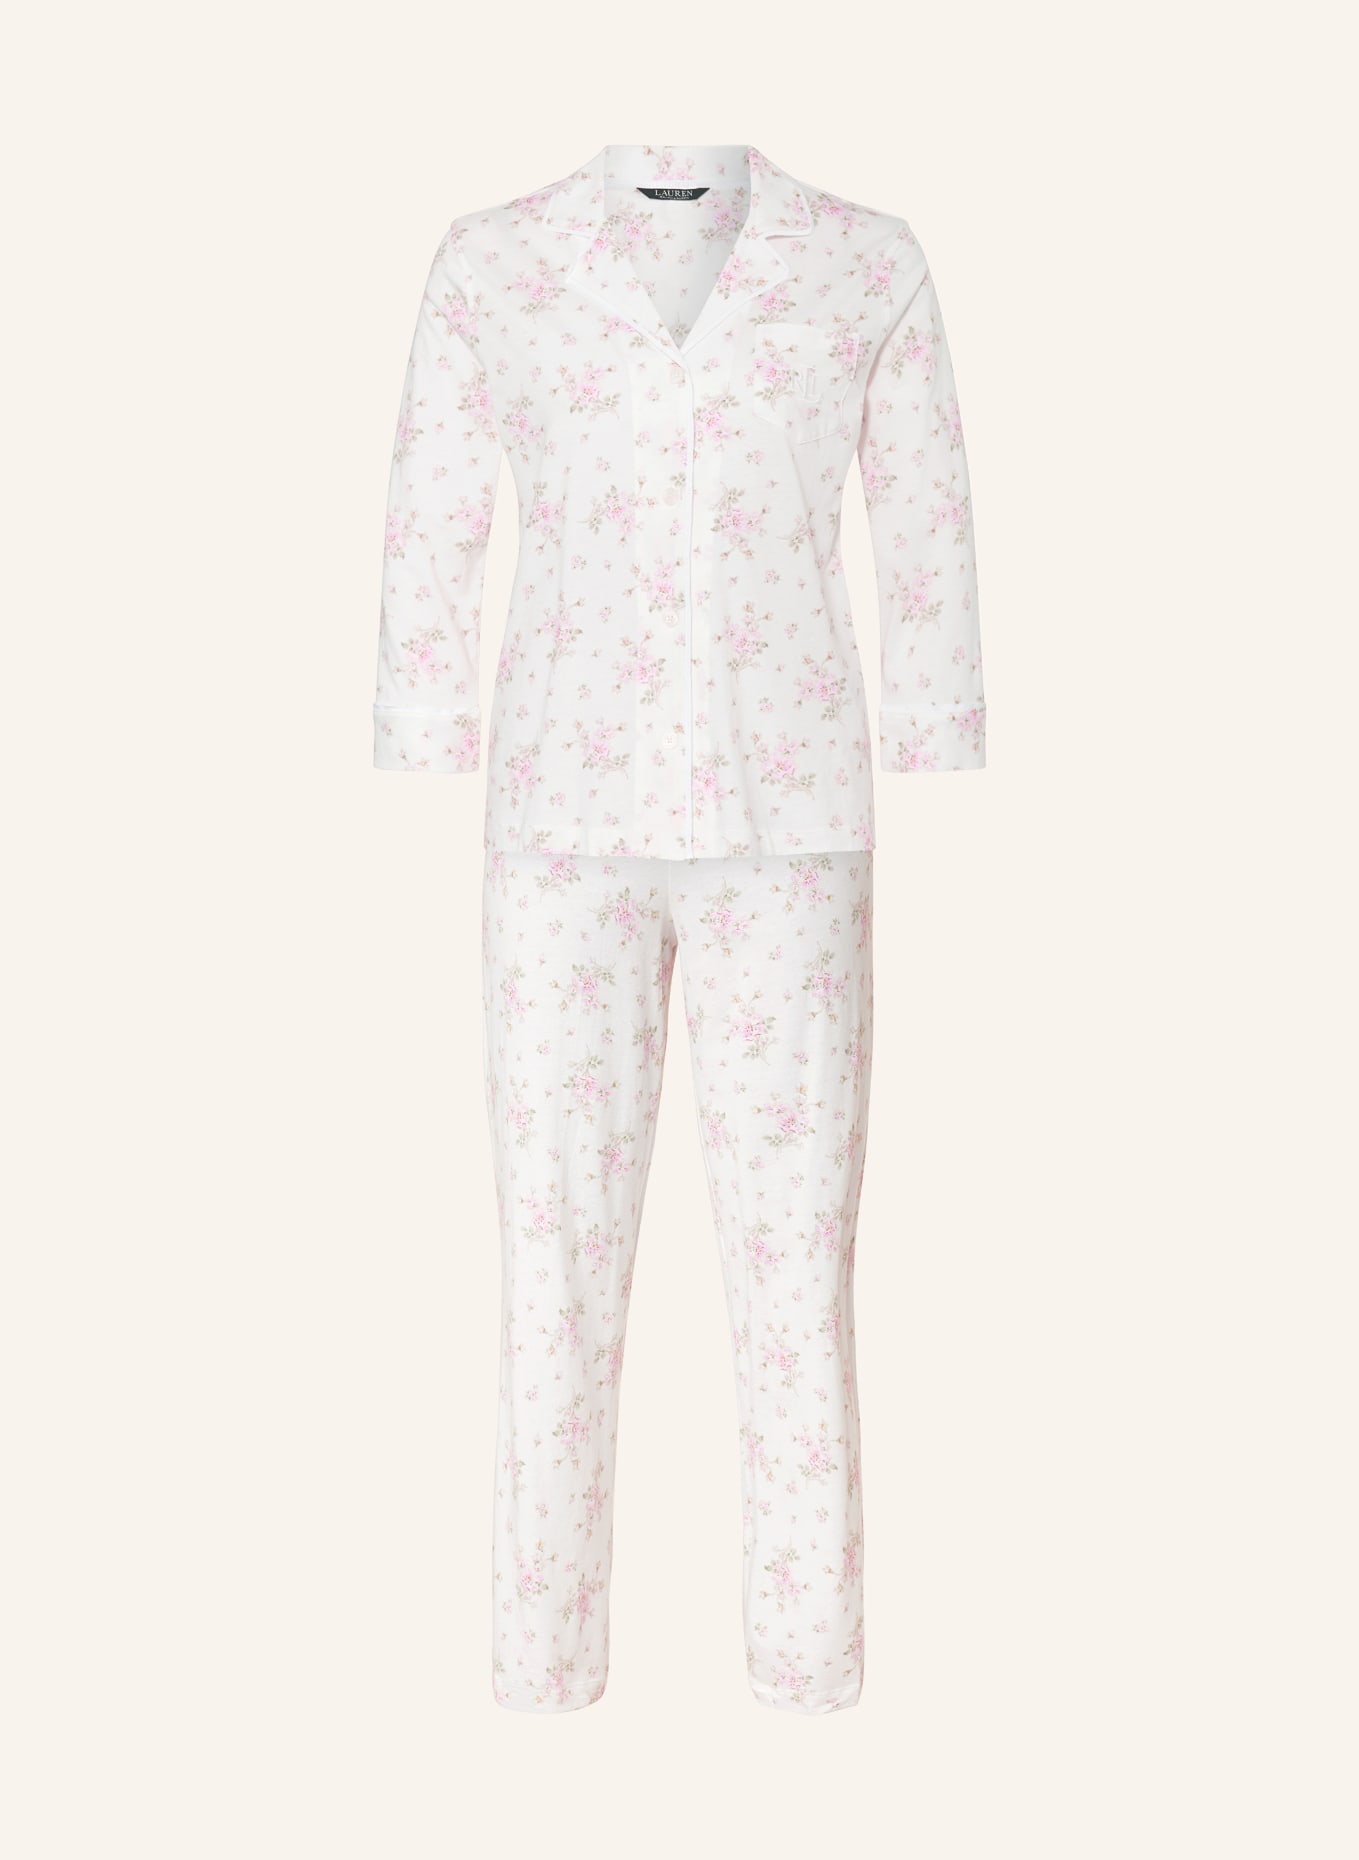 LAUREN RALPH LAUREN Pajamas with 3/4 sleeves, Color: CREAM/ PINK/ GREEN (Image 1)